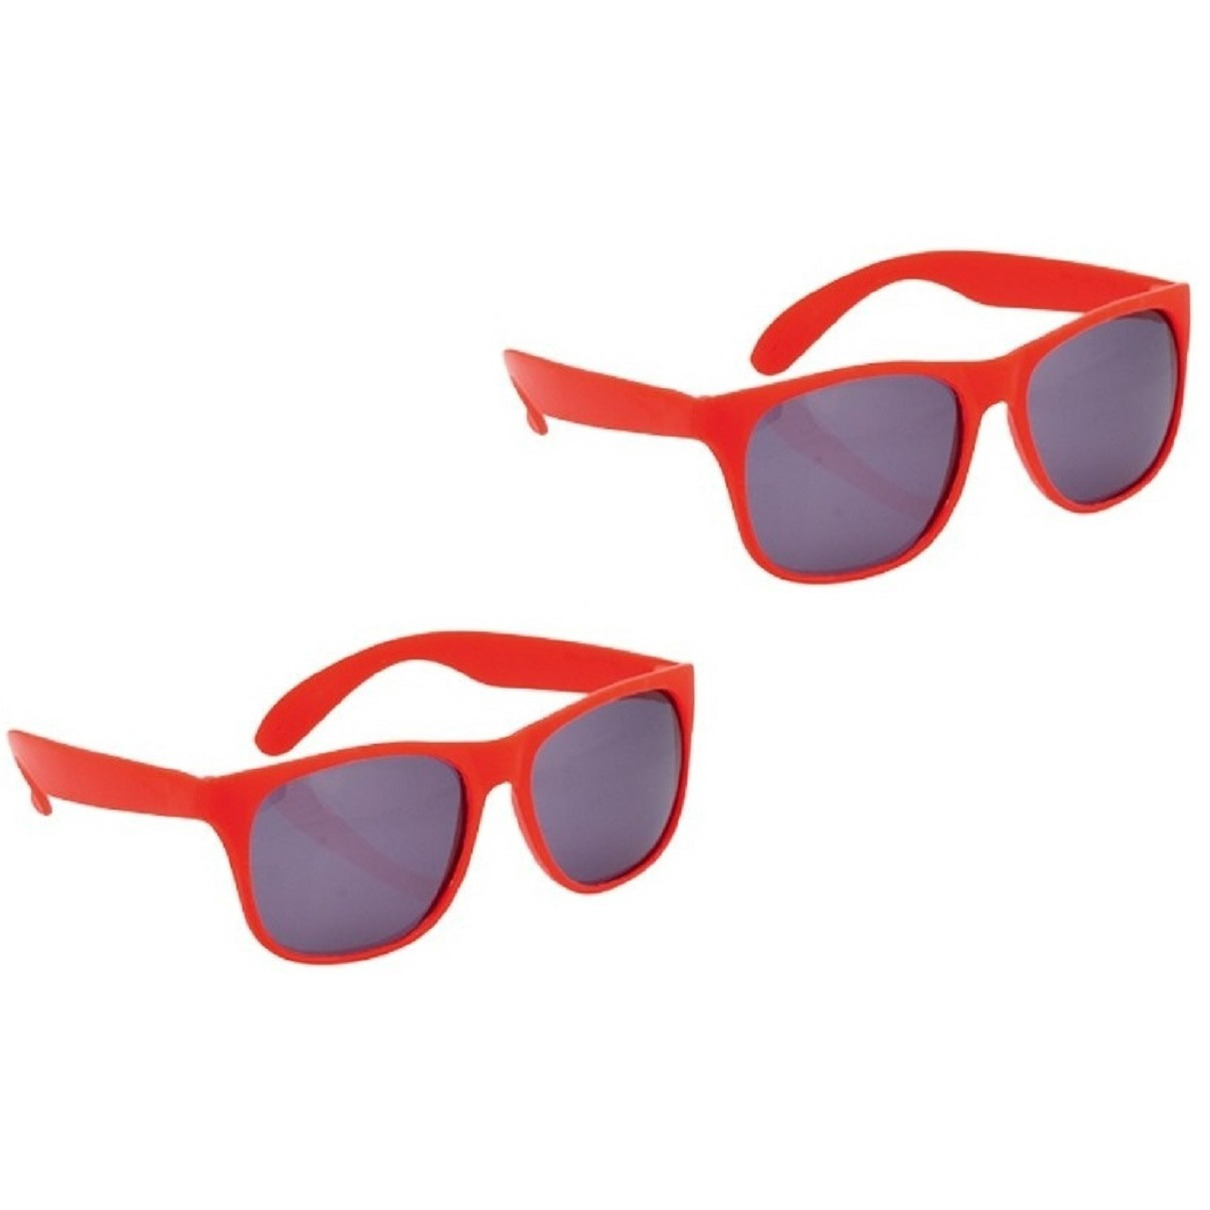 Set van 2x stuks goedkope rode zonnebrillen